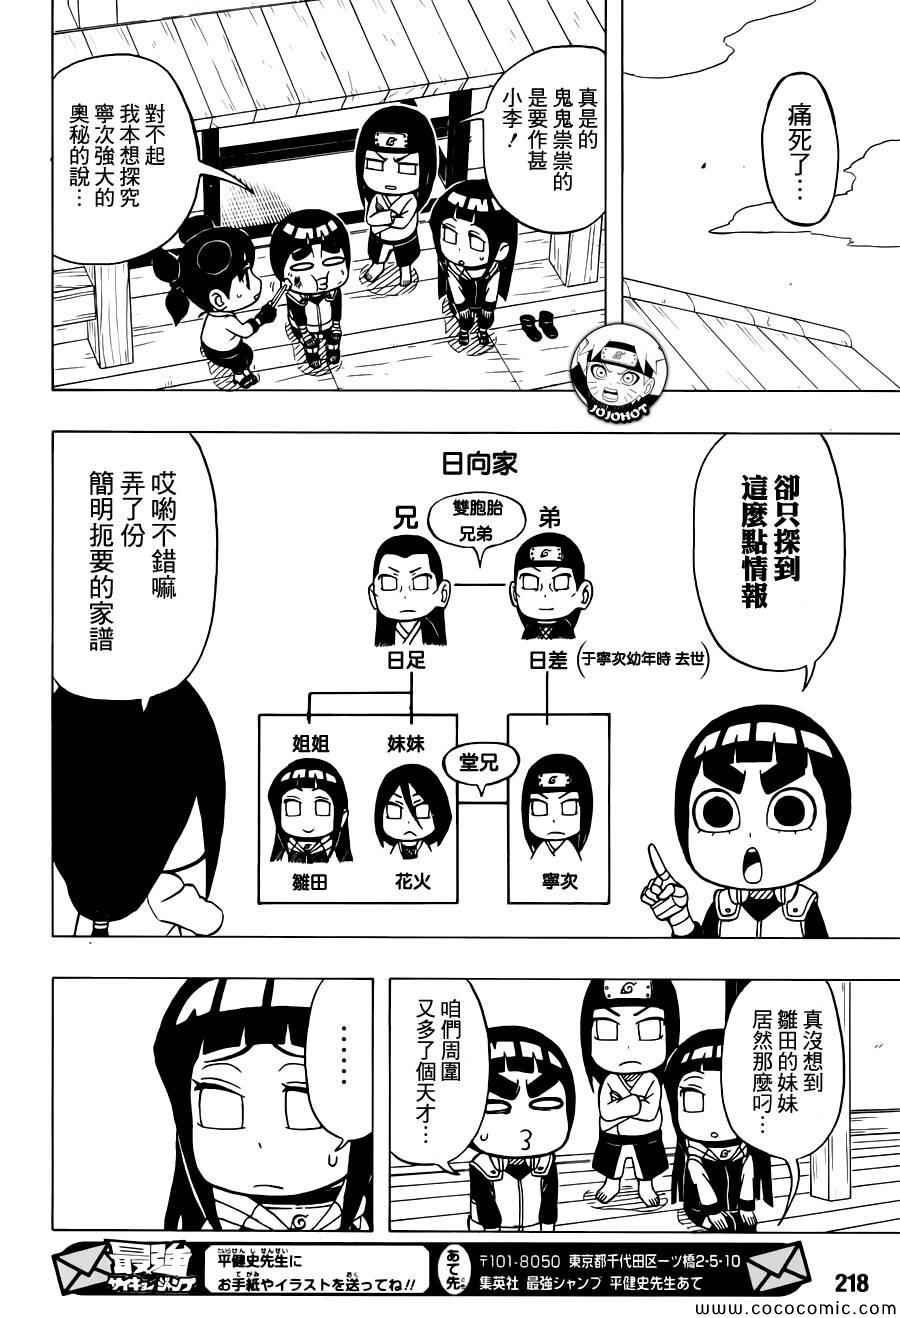 《洛克李之青春活力全开忍传》漫画 洛克李34集